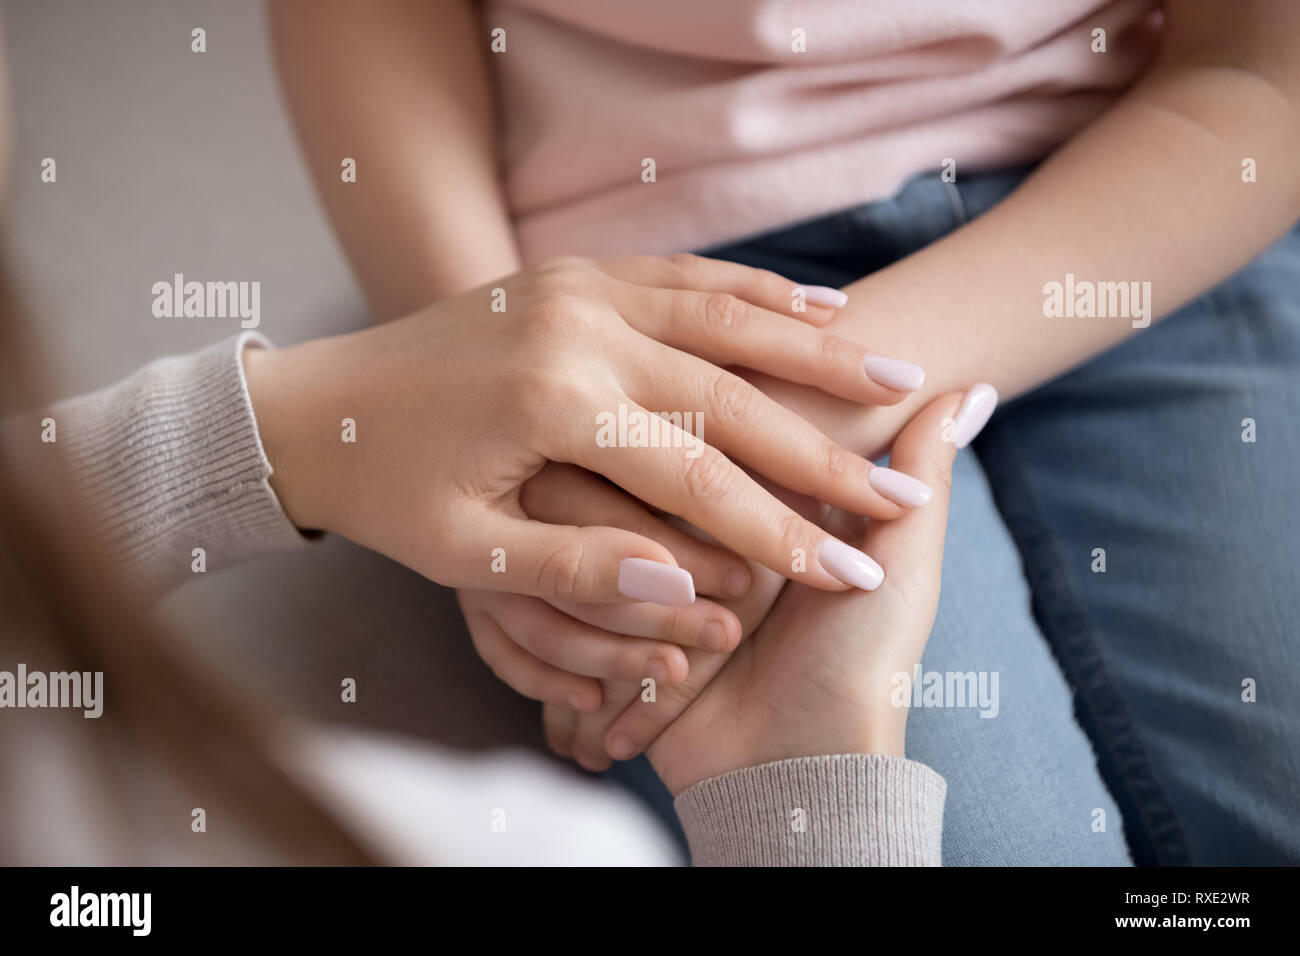 Erwachsene Frau Mutter halten sich an den Händen von Kind, Familie Vertrauen, Nahaufnahme Stockfoto